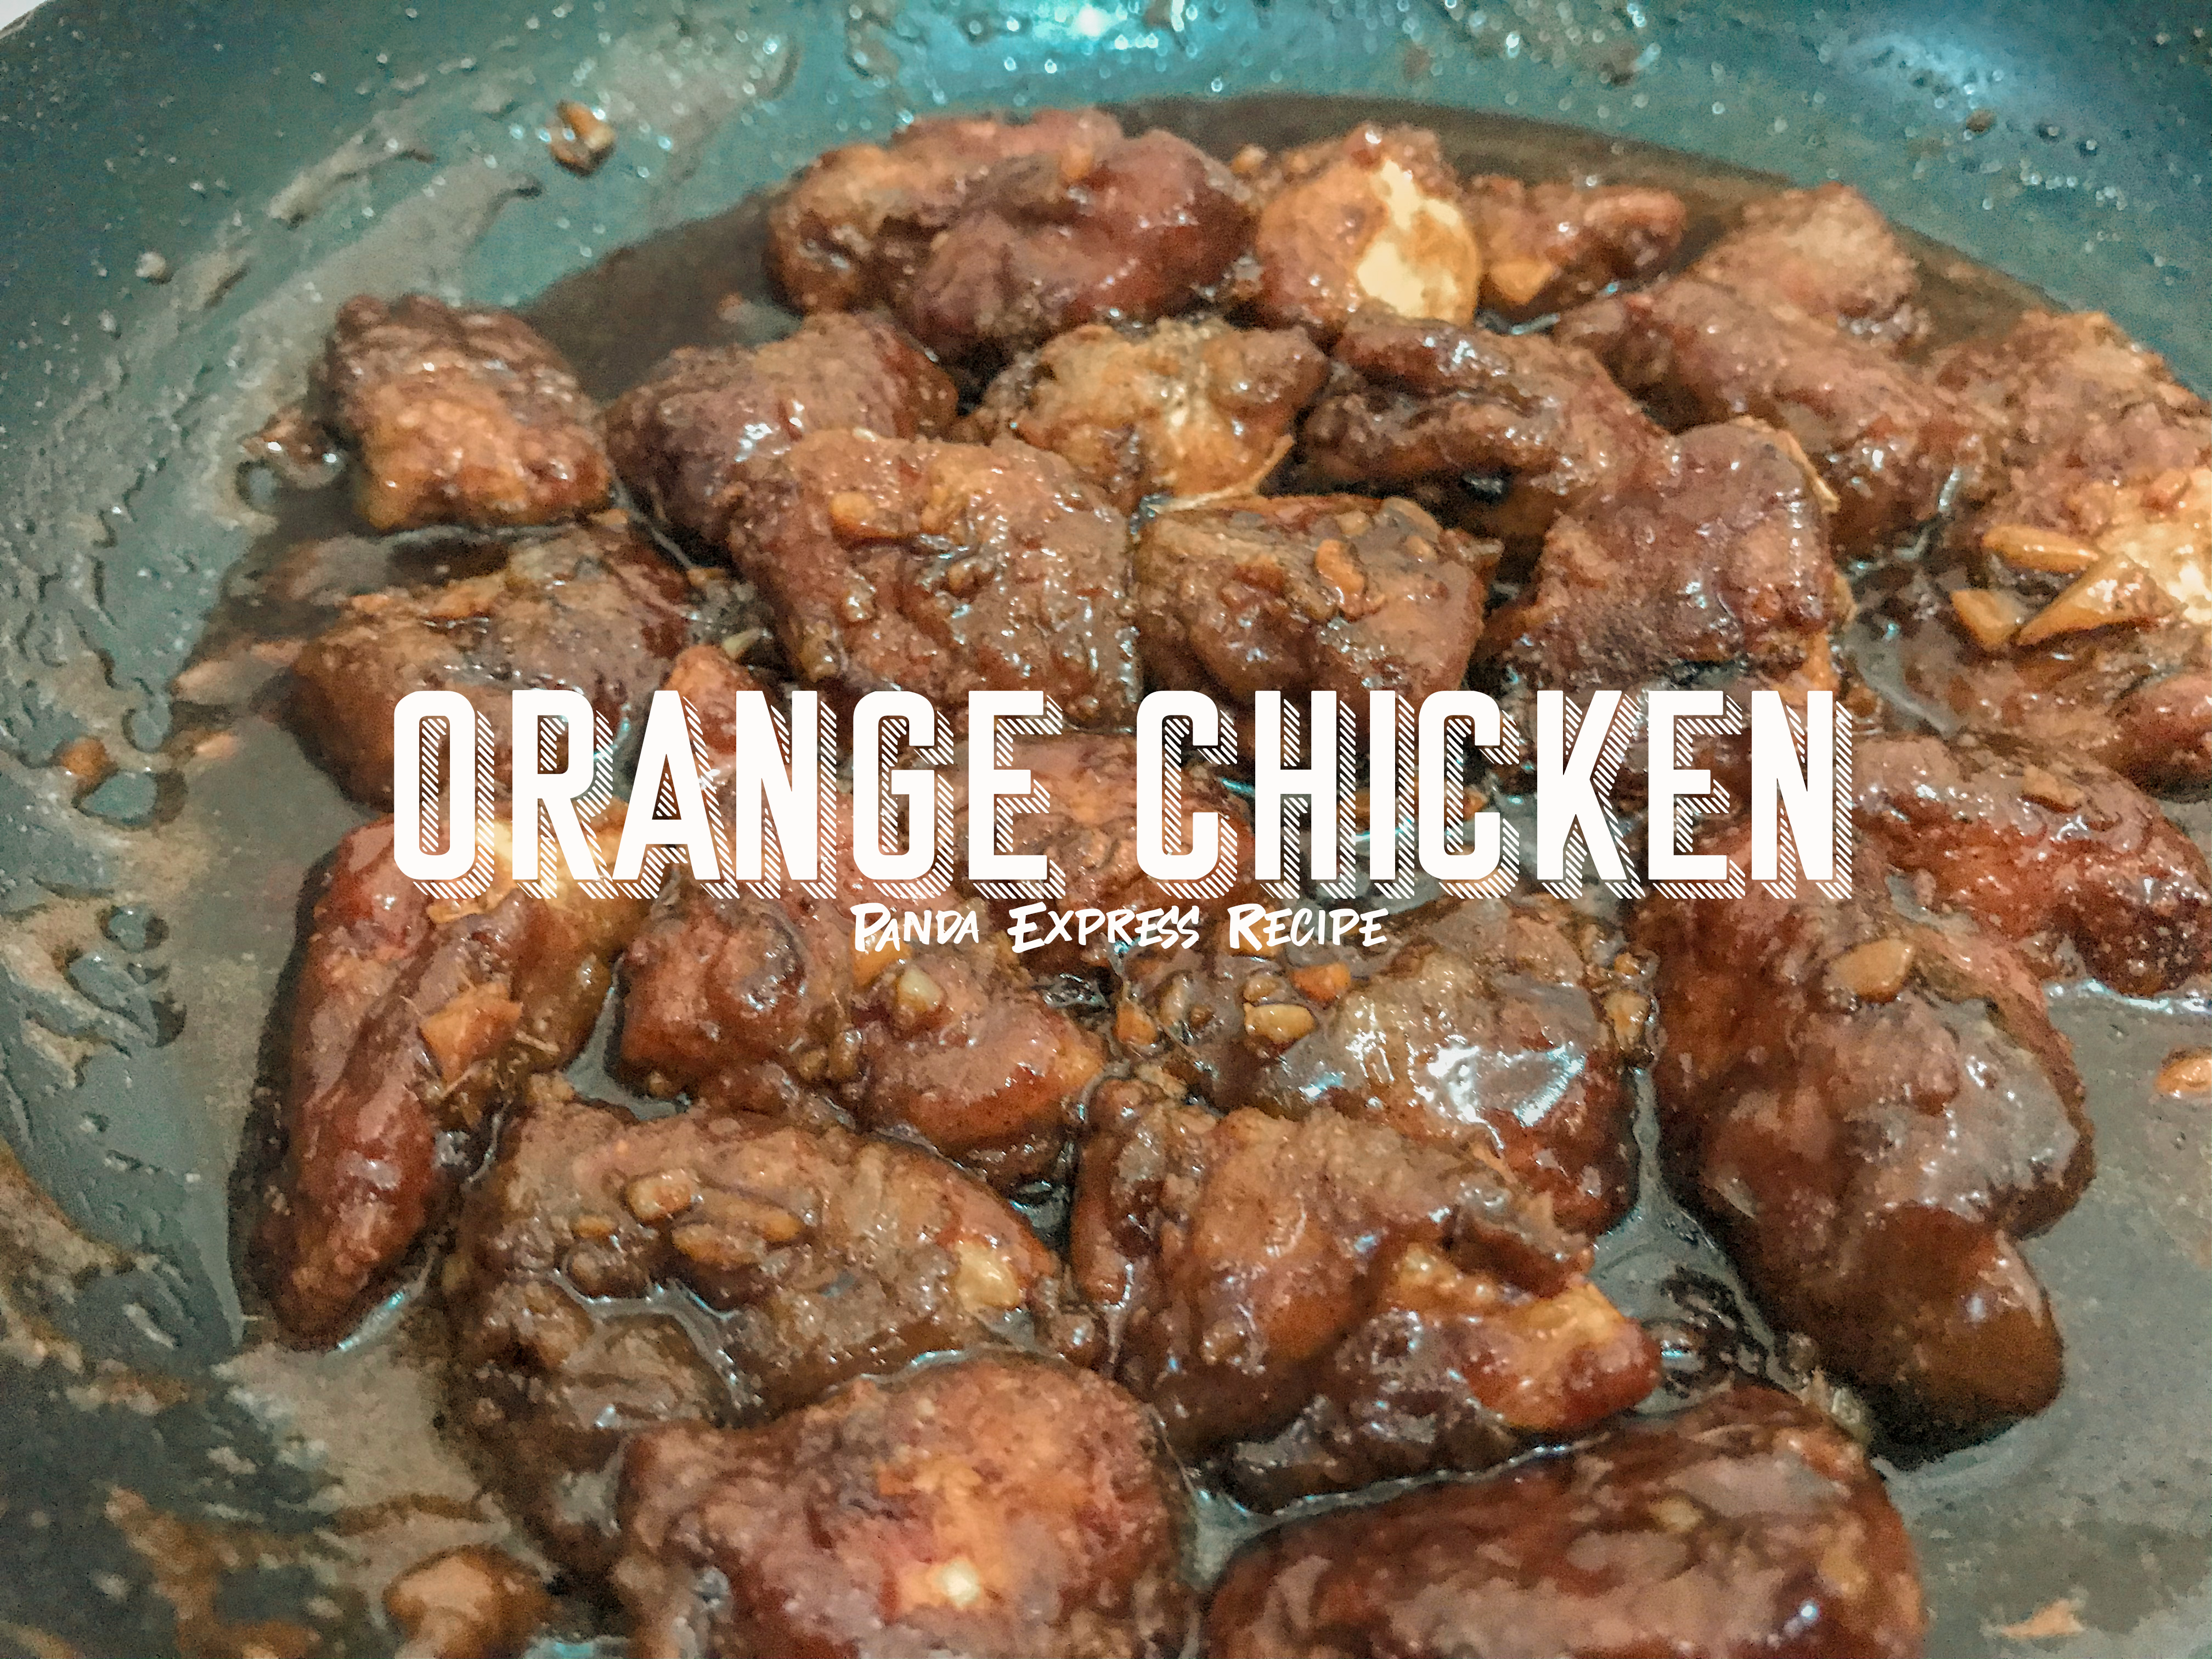 Day 70: Orange Chicken